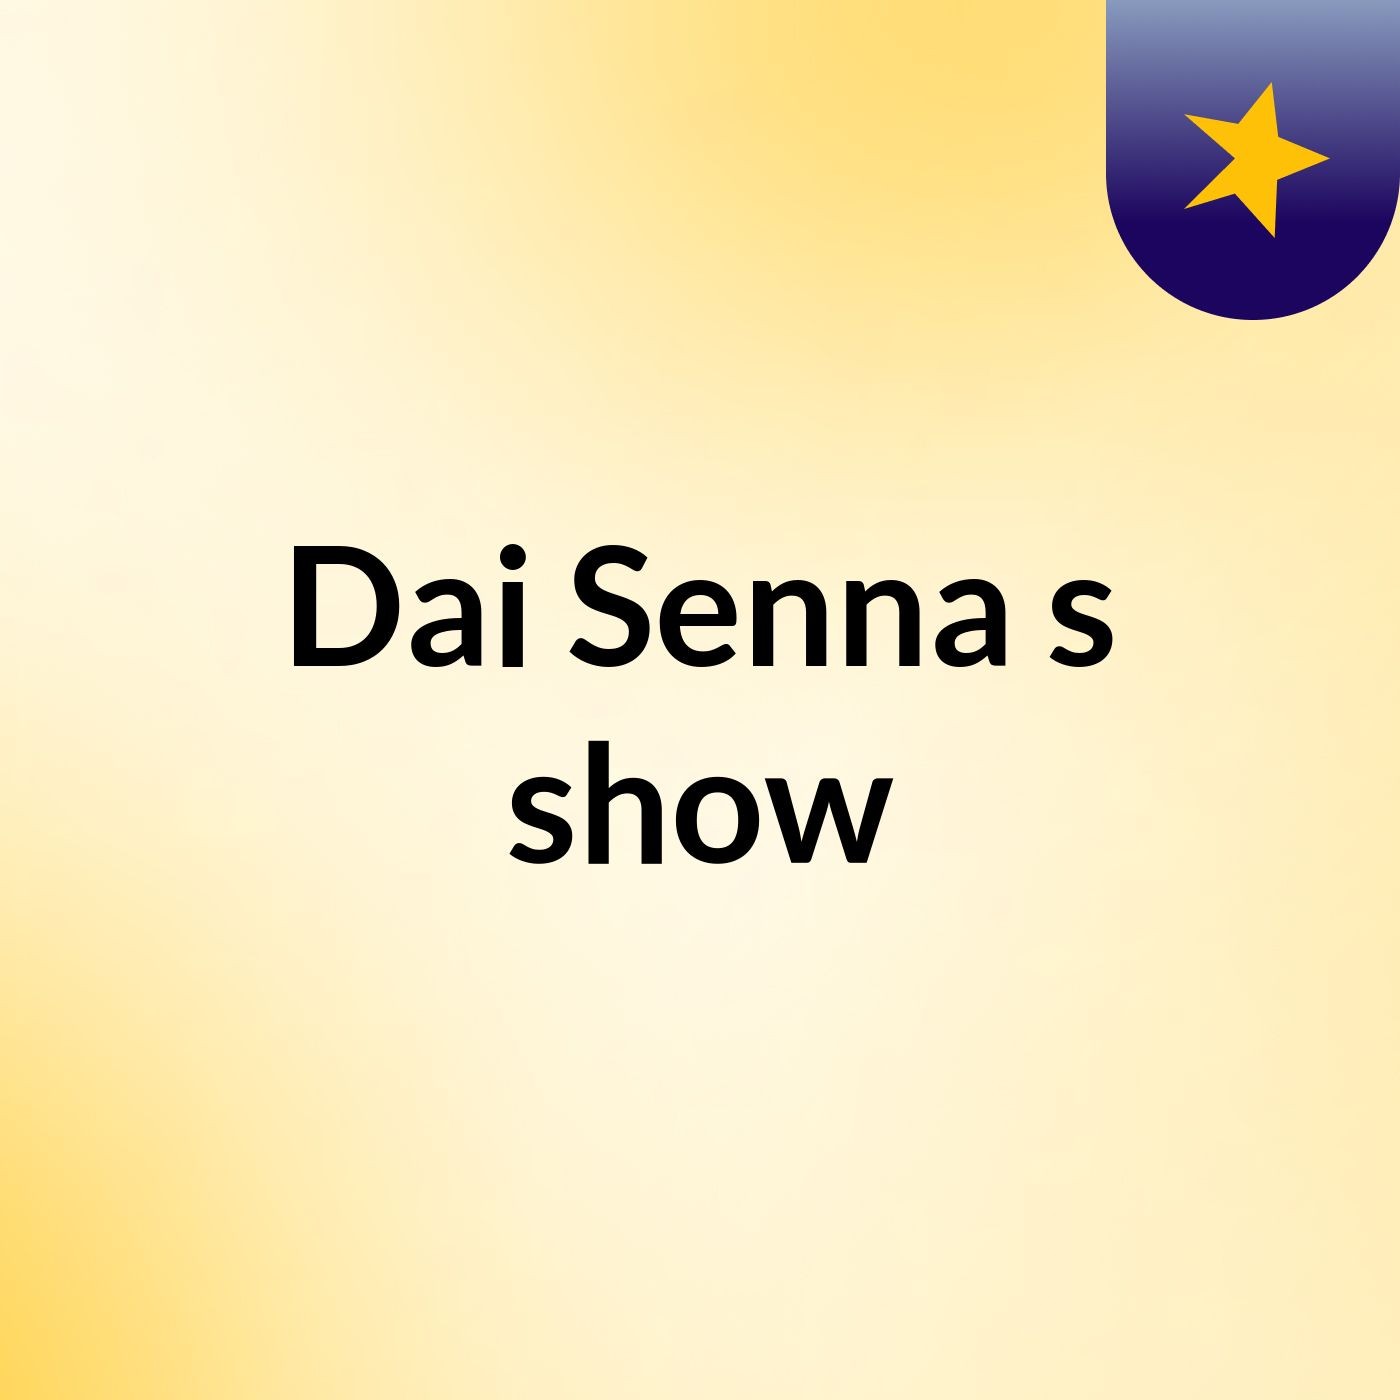 Dai Senna's show